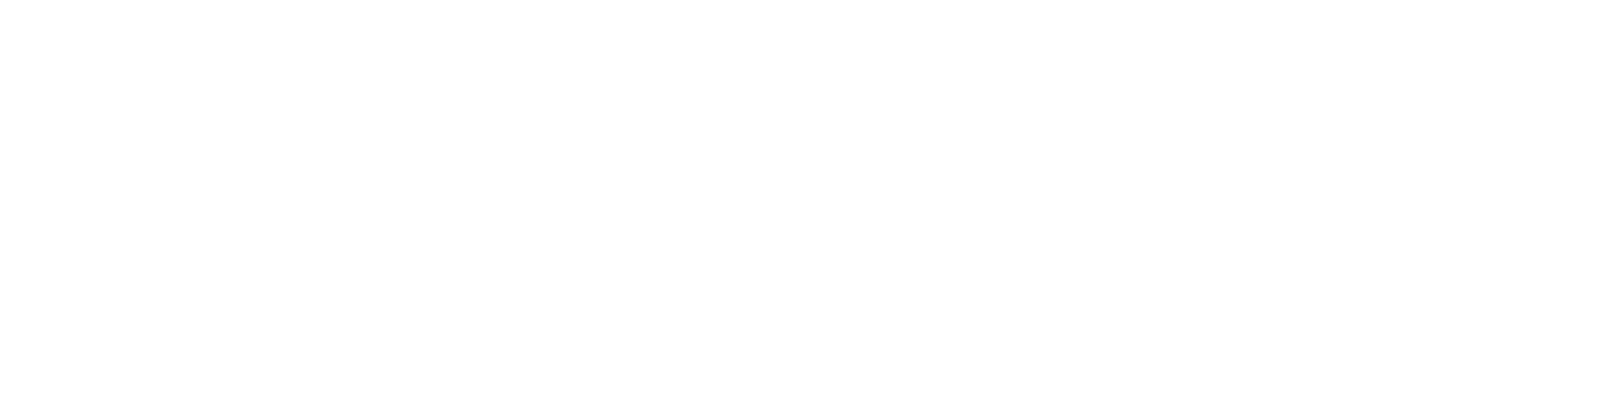 Ooma, Inc. Logo